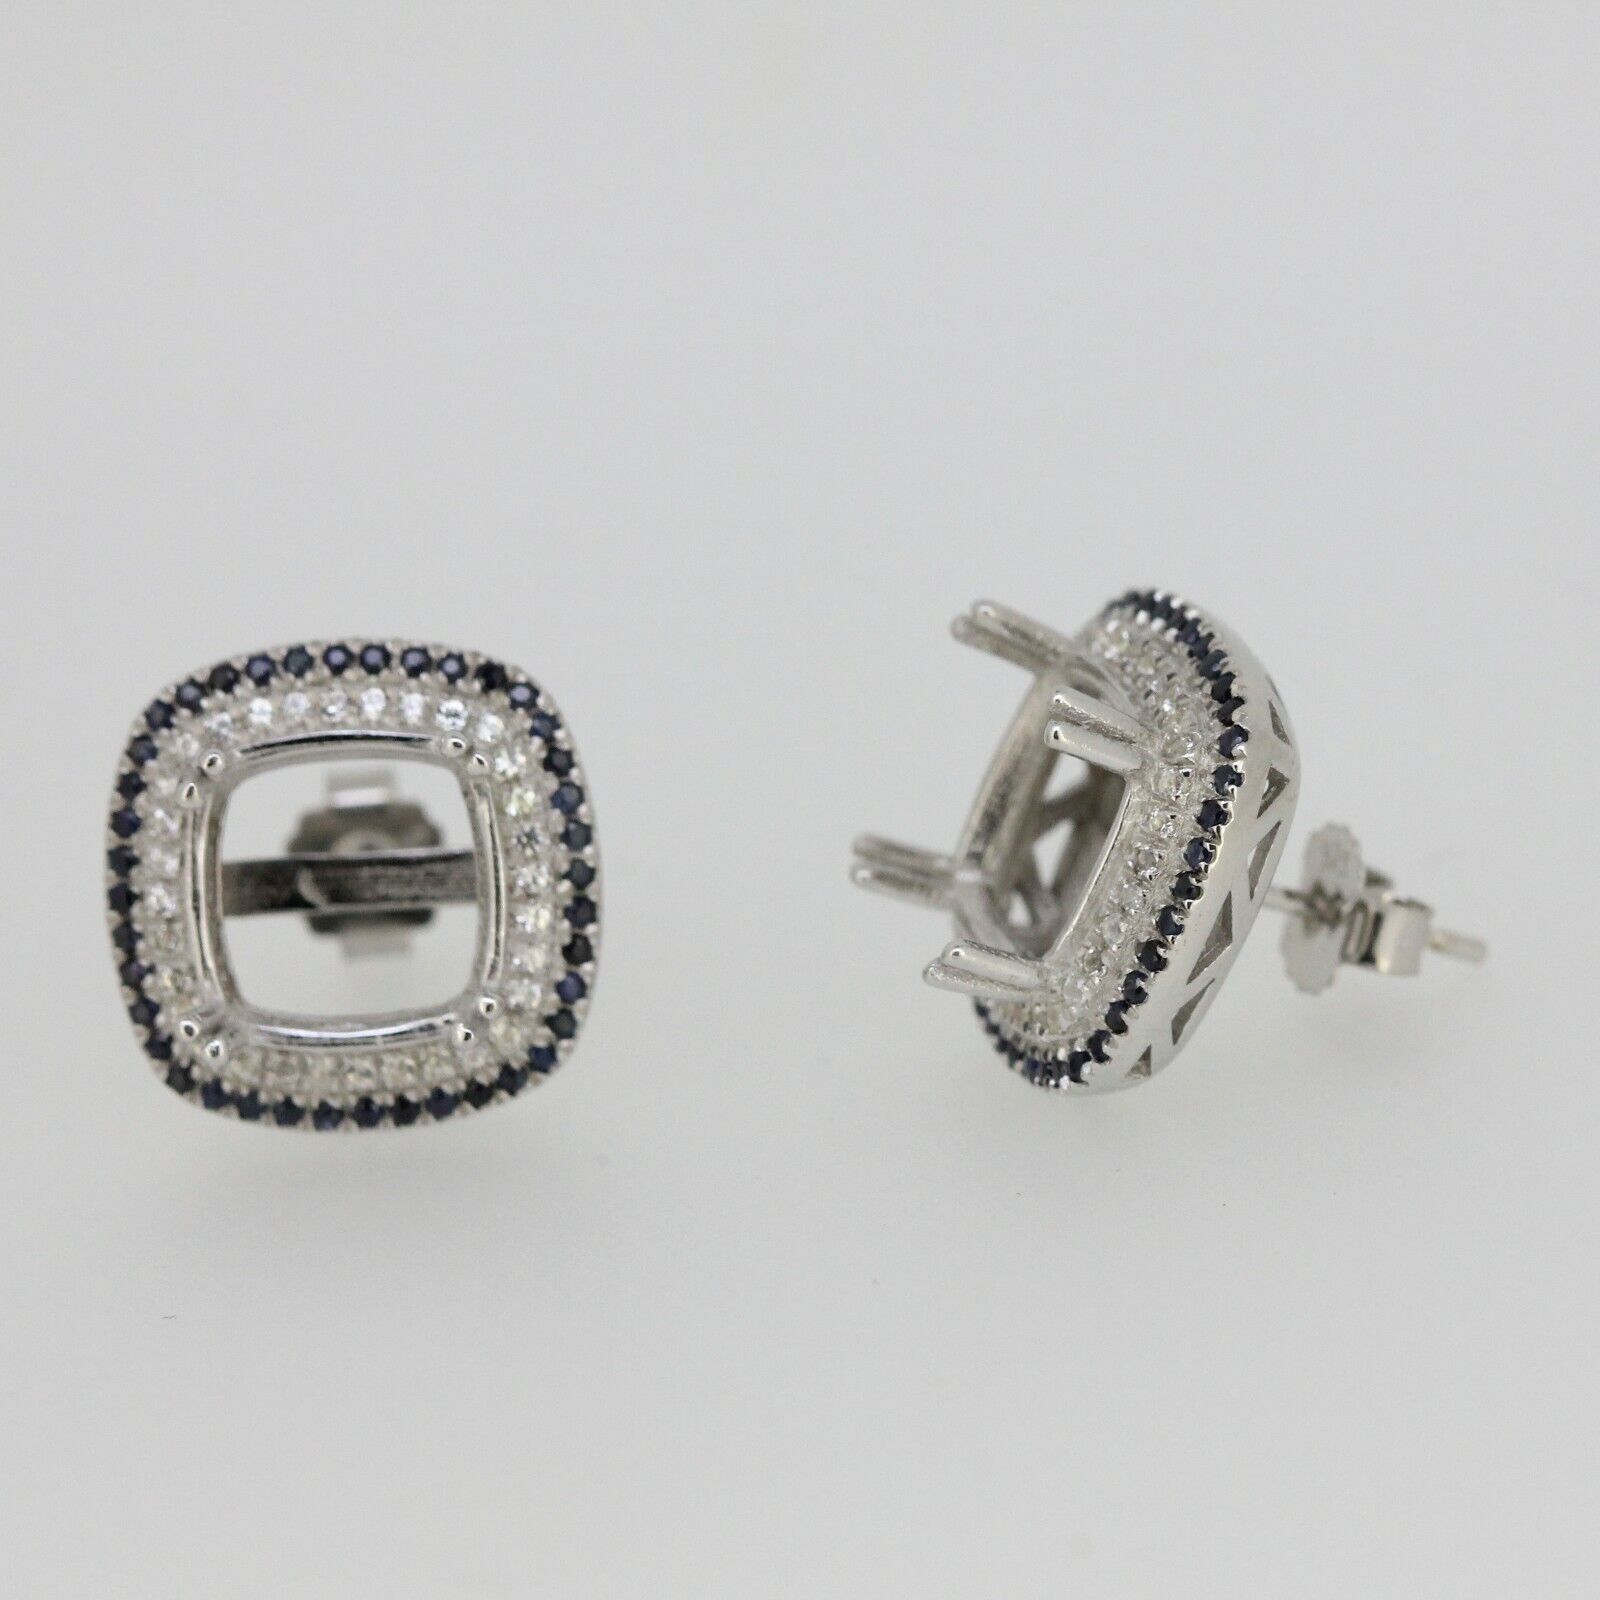 Sterling Silver Semi Mount Earrings Setting Sapphire Ruby Emerald Cu 10x10mm